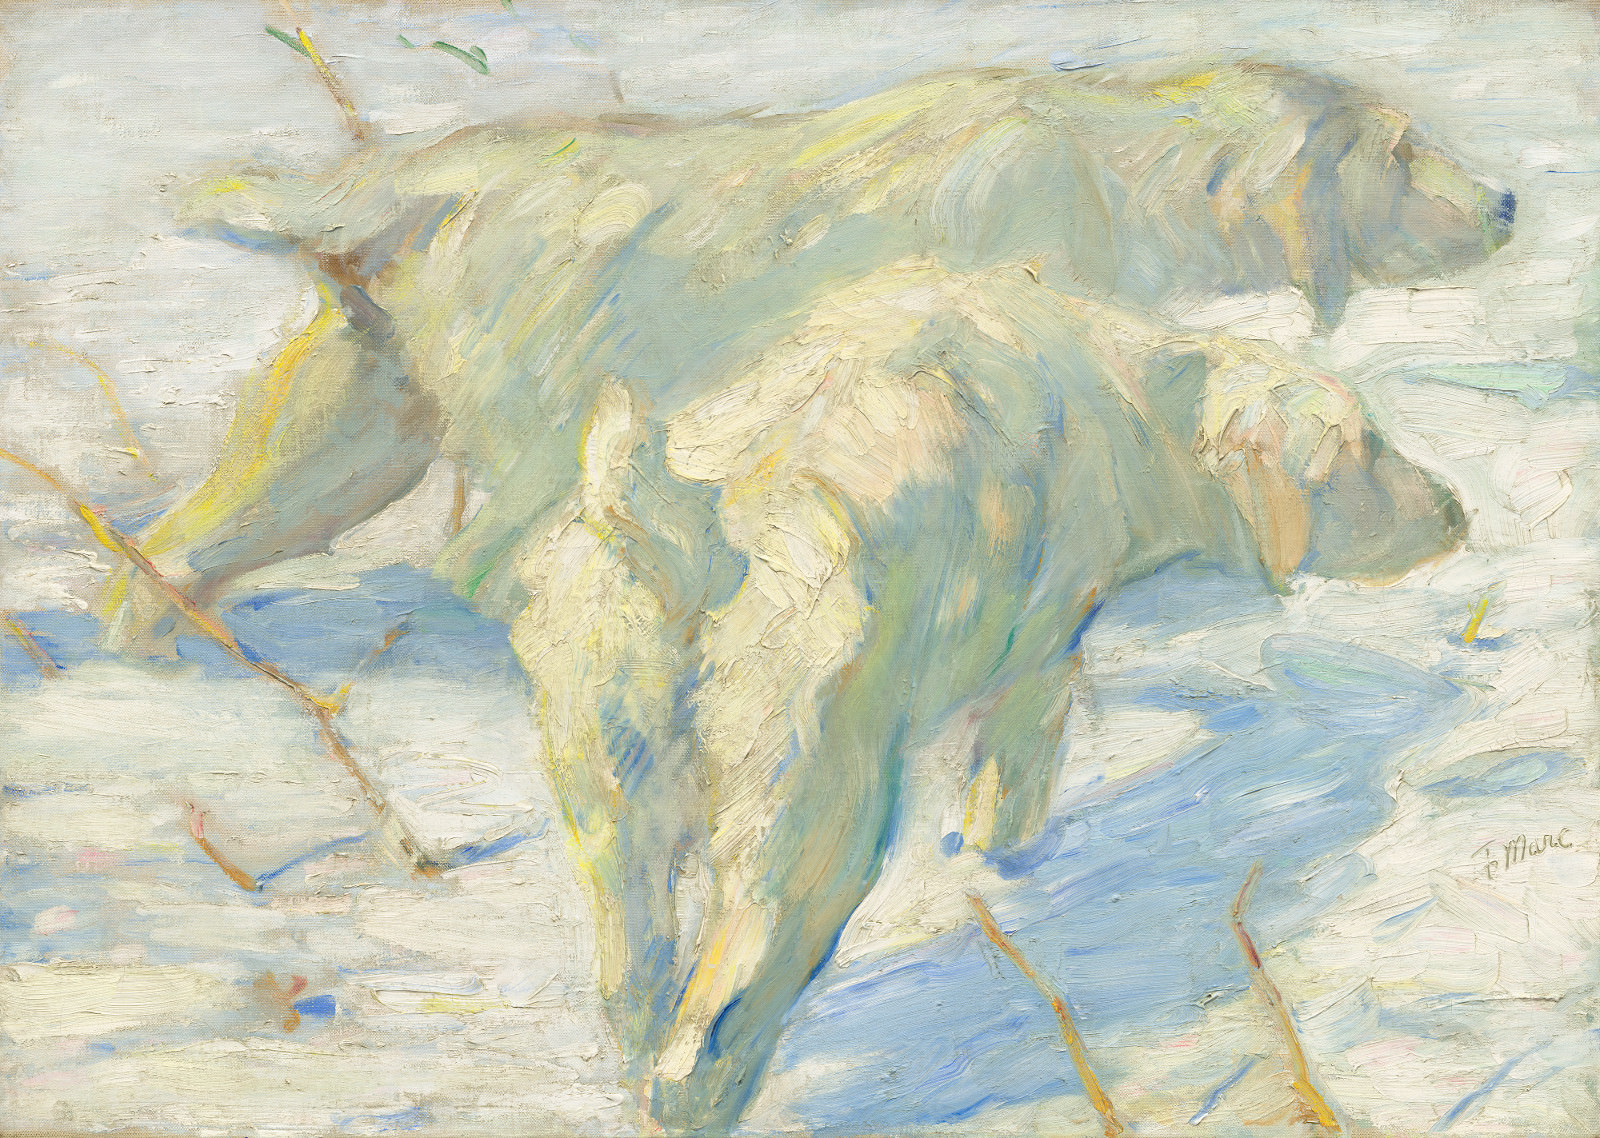 Figue. 11 - Chiens de Sibérie neige, Franz Marc, 1909/1910, huile sur toile, 80,5 x 114 cm. National Gallery of Art, Washington. cadeau M.. e Mme. Stephen M. Kellen.